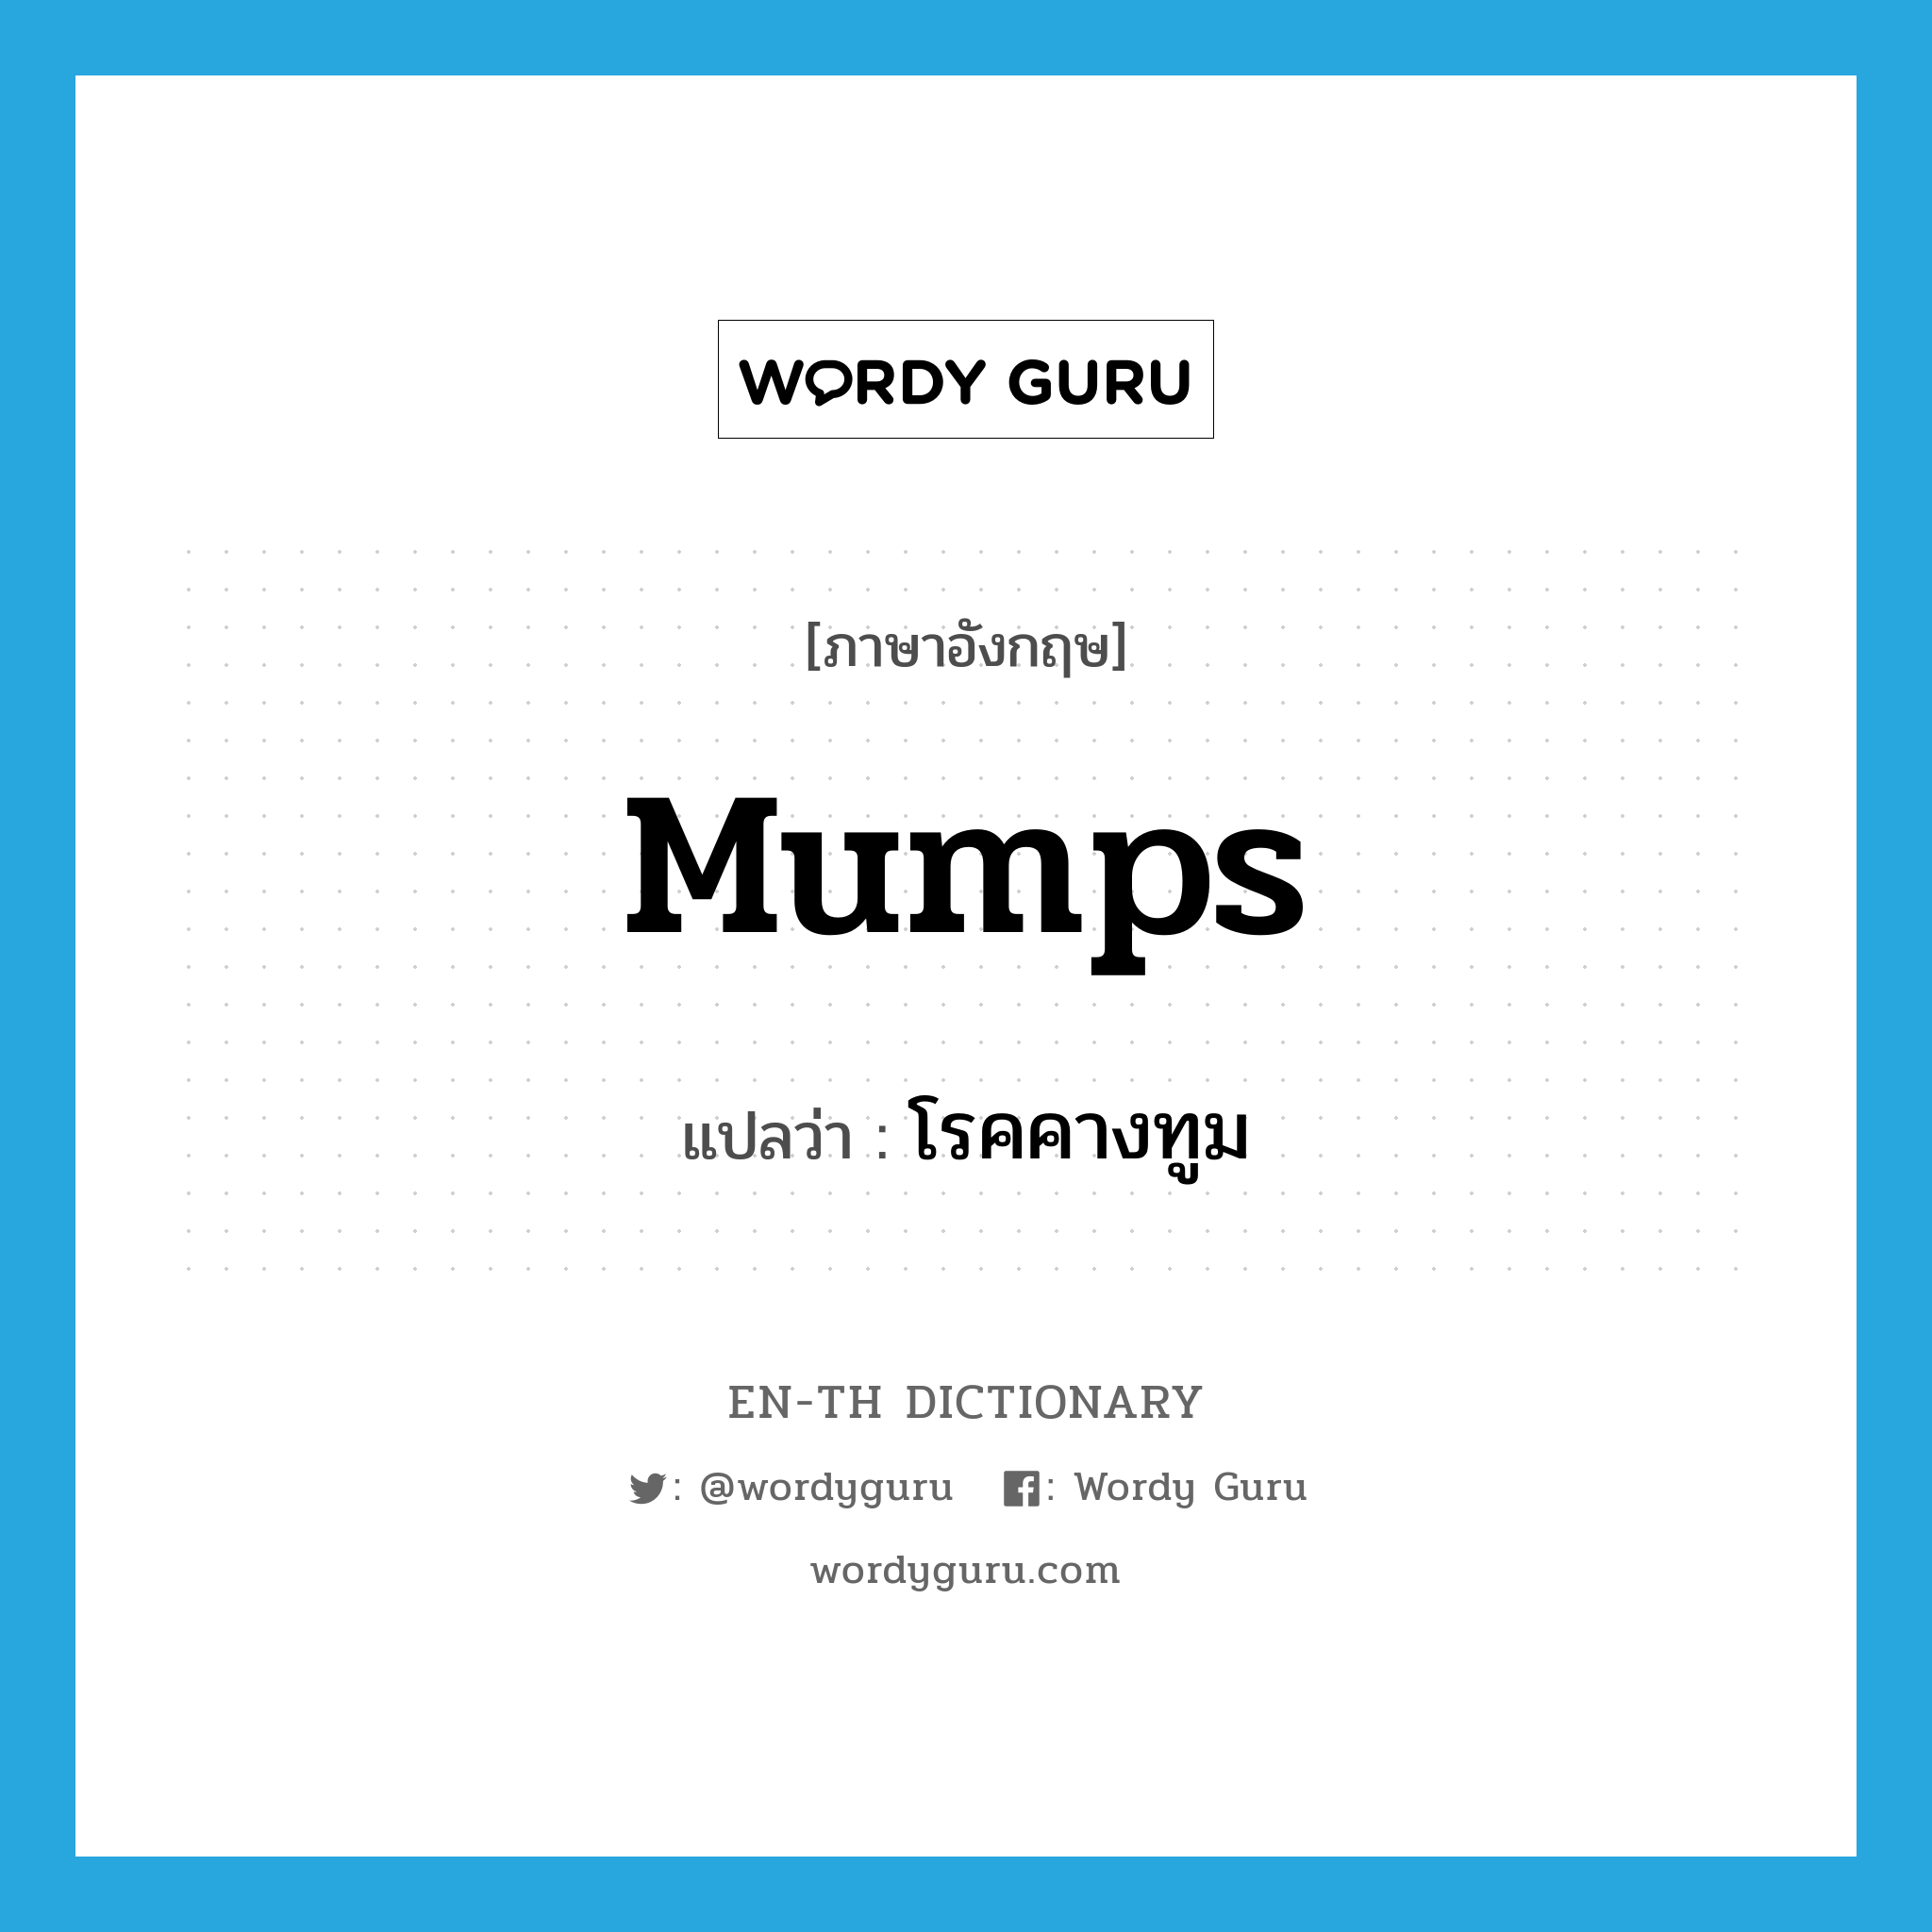 mumps แปลว่า?, คำศัพท์ภาษาอังกฤษ mumps แปลว่า โรคคางทูม ประเภท N หมวด N